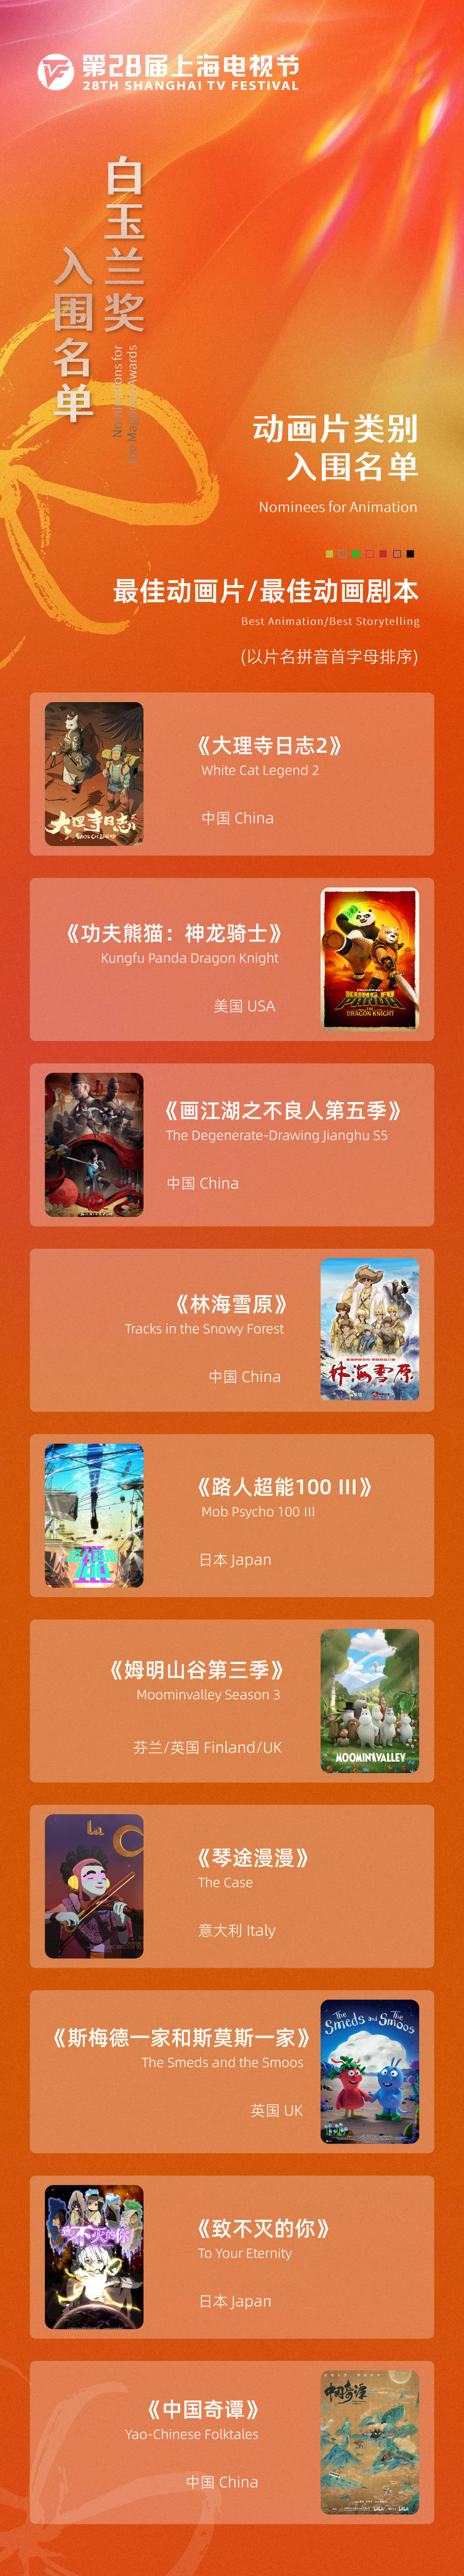 第28届上海电视节白玉兰奖入围名单揭晓！《狂飙》《人世间》等口碑热剧在列